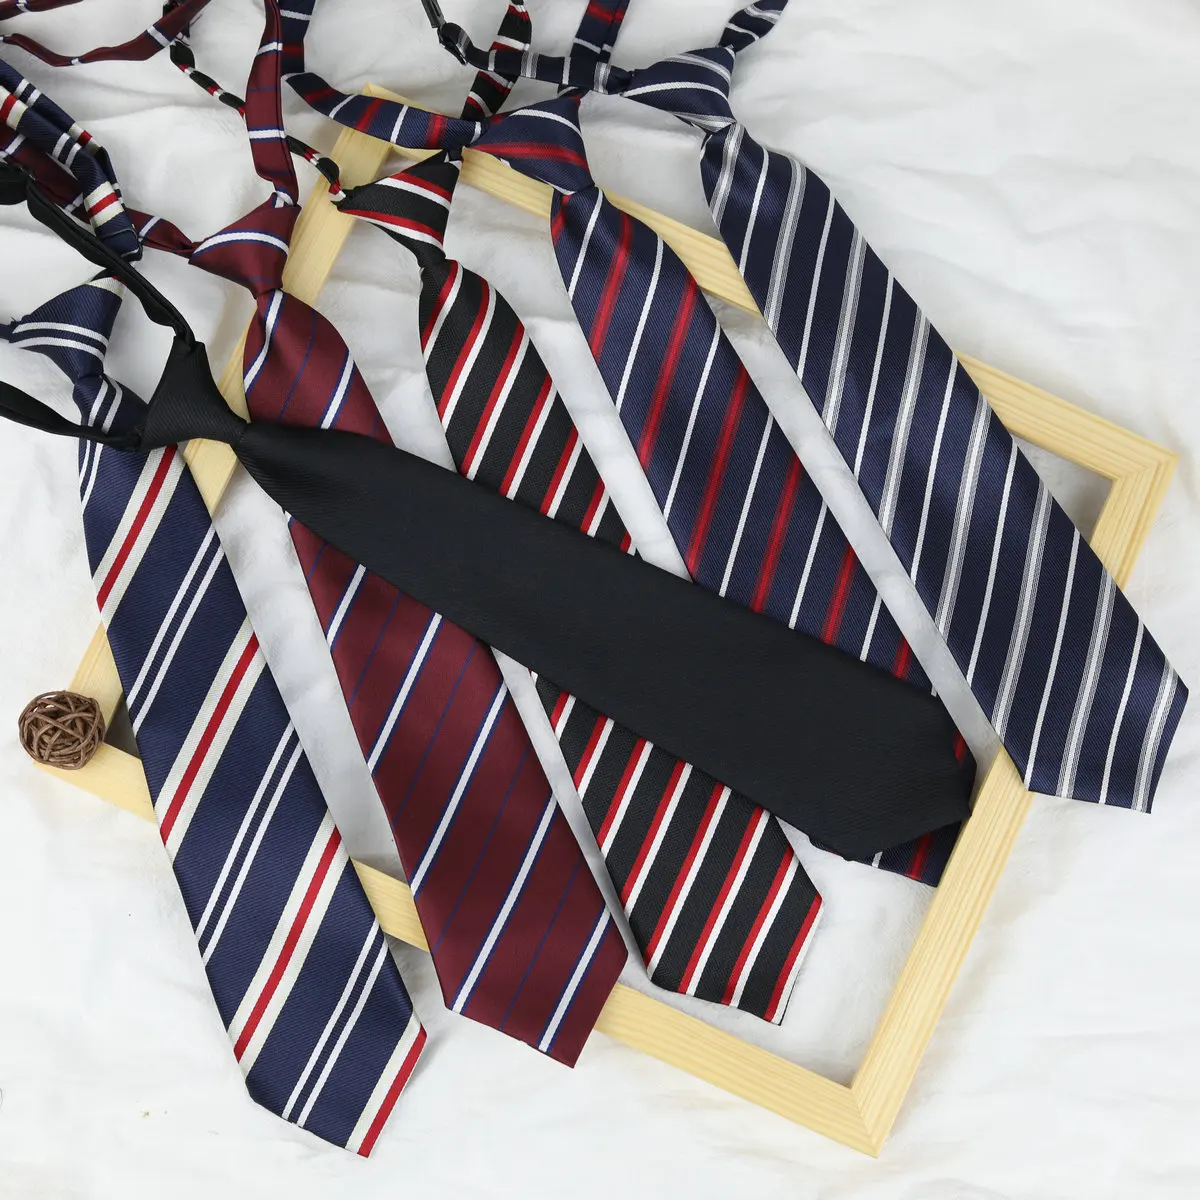 33*6cm/13*13cm JK Ties Women Plaid Neck Tie Girls Japanese Style for Jk Uniform Cute Necktie Plaid Uniform School Accessories